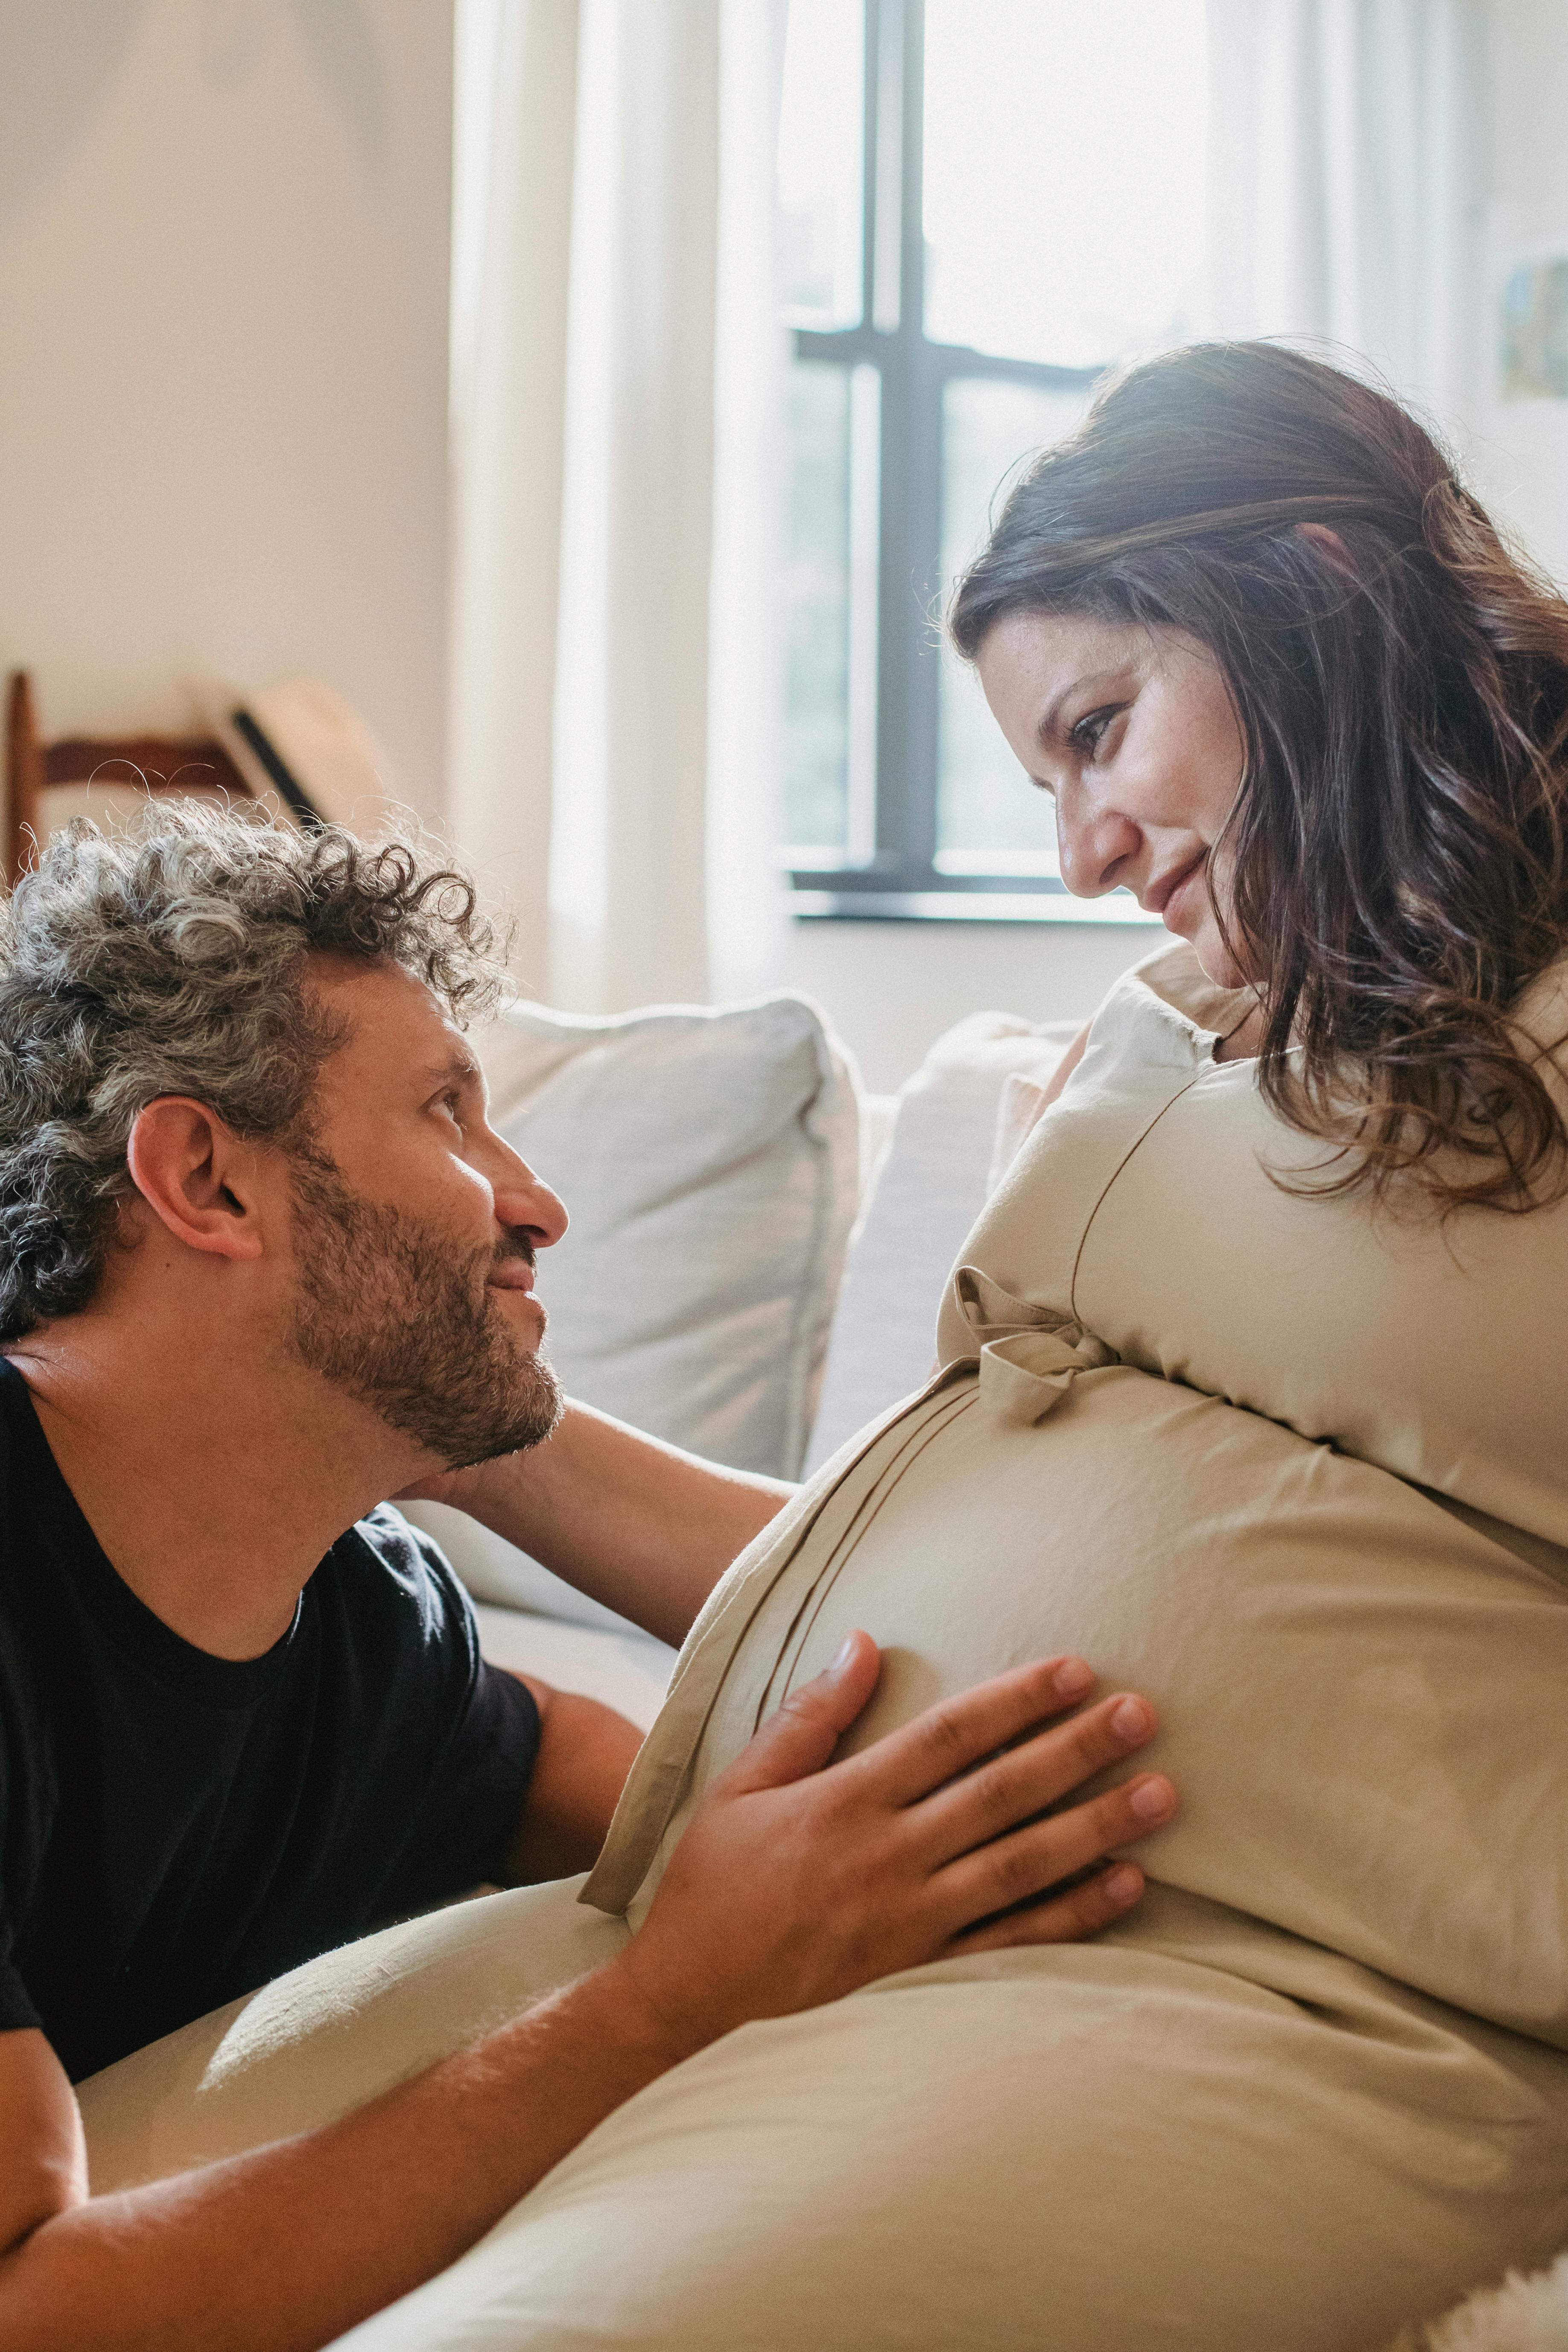 Ein Mann berührt den Bauch seiner schwangeren Frau, während sie sich gegenseitig anstarren | Quelle: Pexels